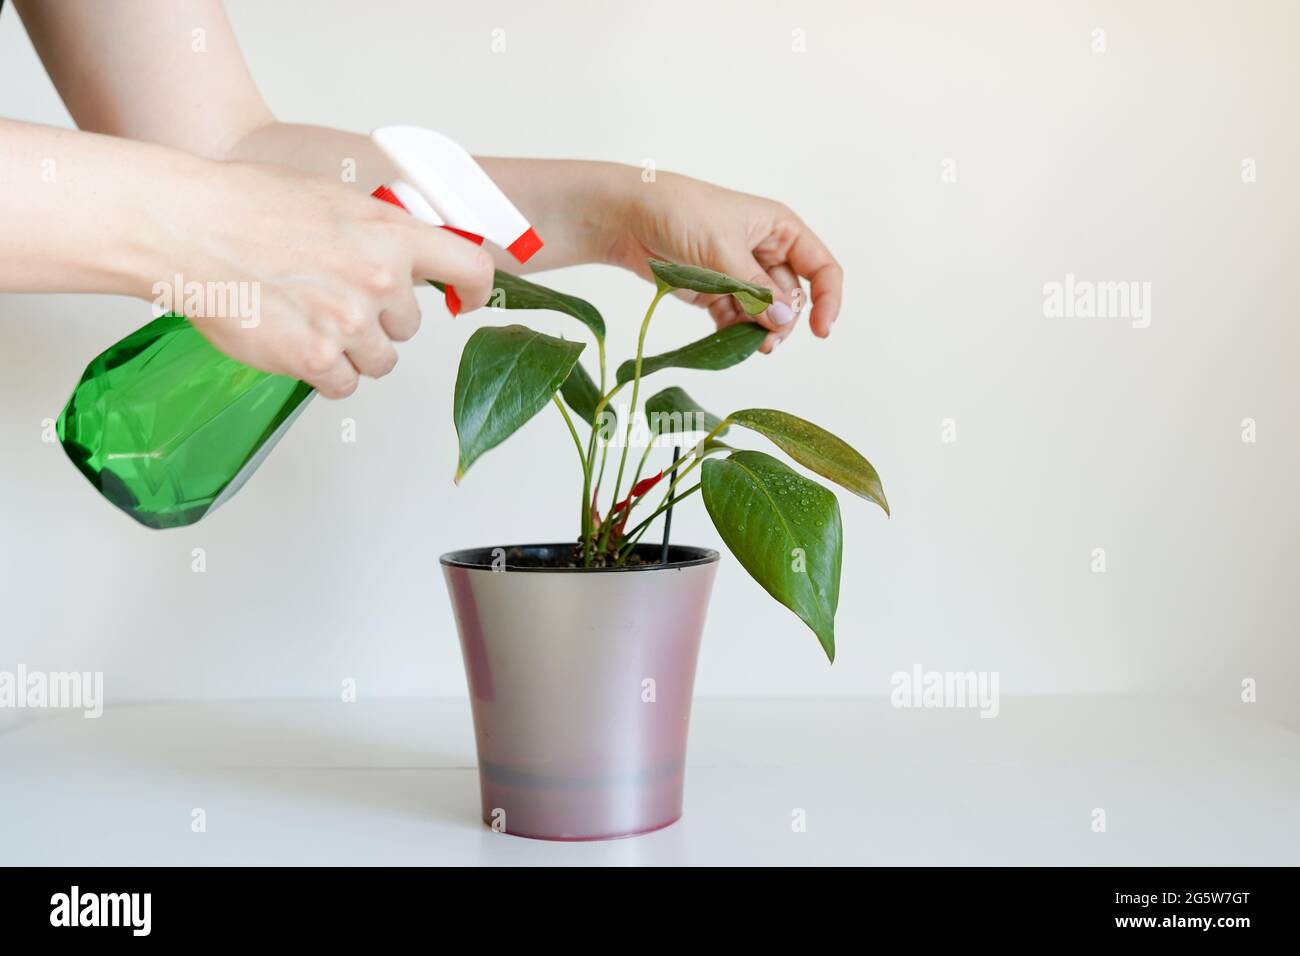 Mani di donna che spruzzano le foglie di pianta verde con acqua. Prendersi cura di piante domestiche indoor Foto Stock